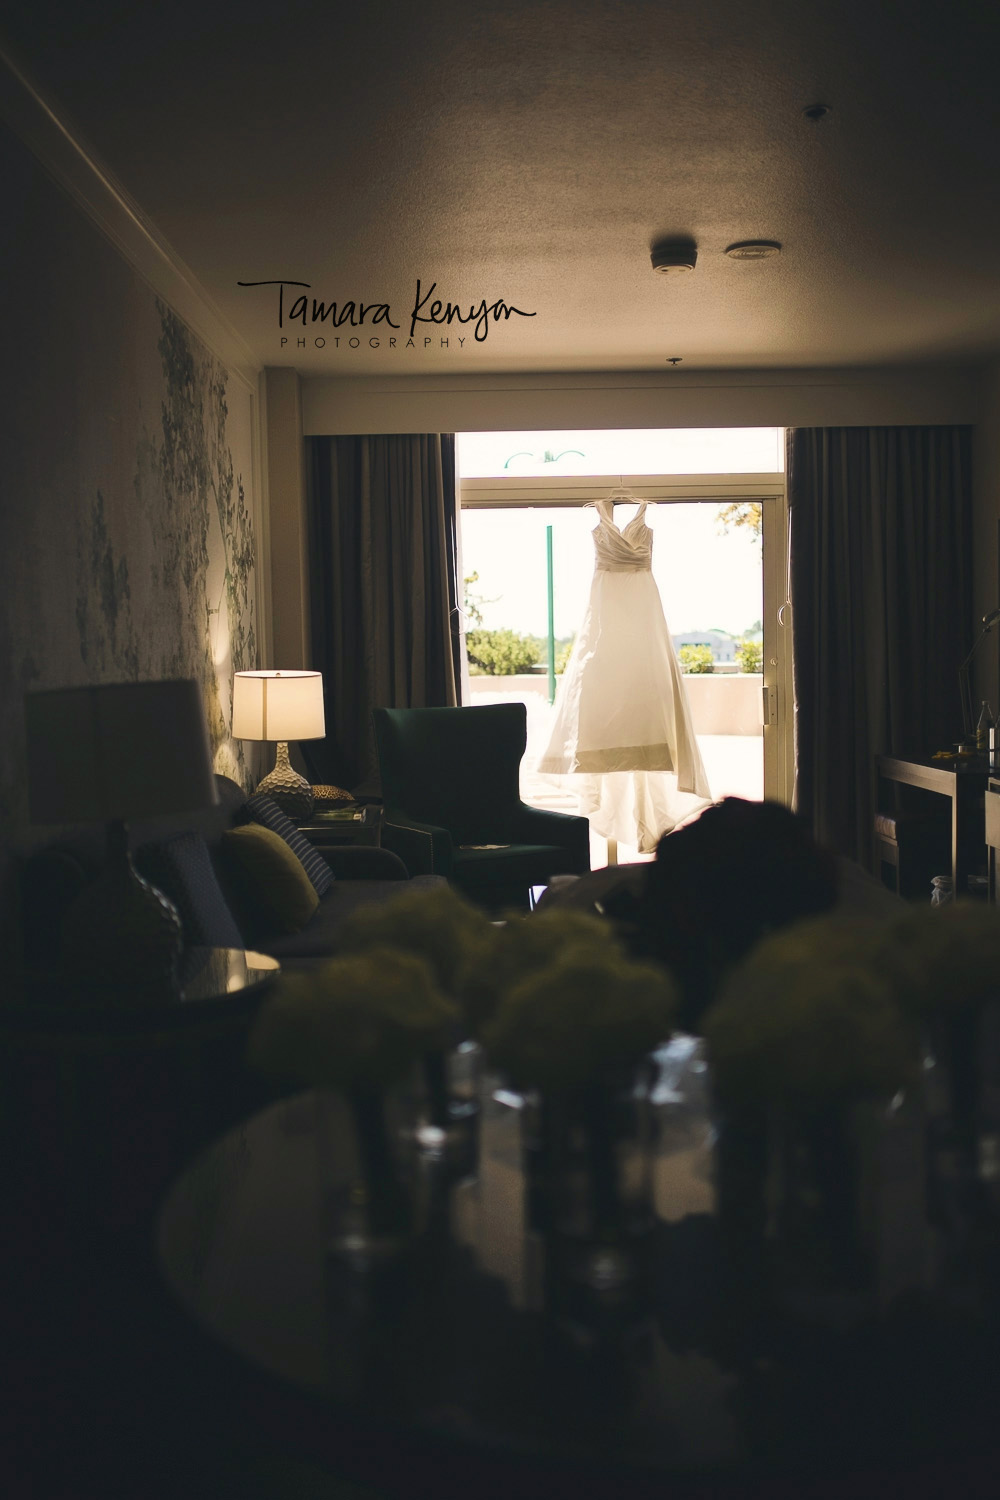 wedding dress in the window.jpg